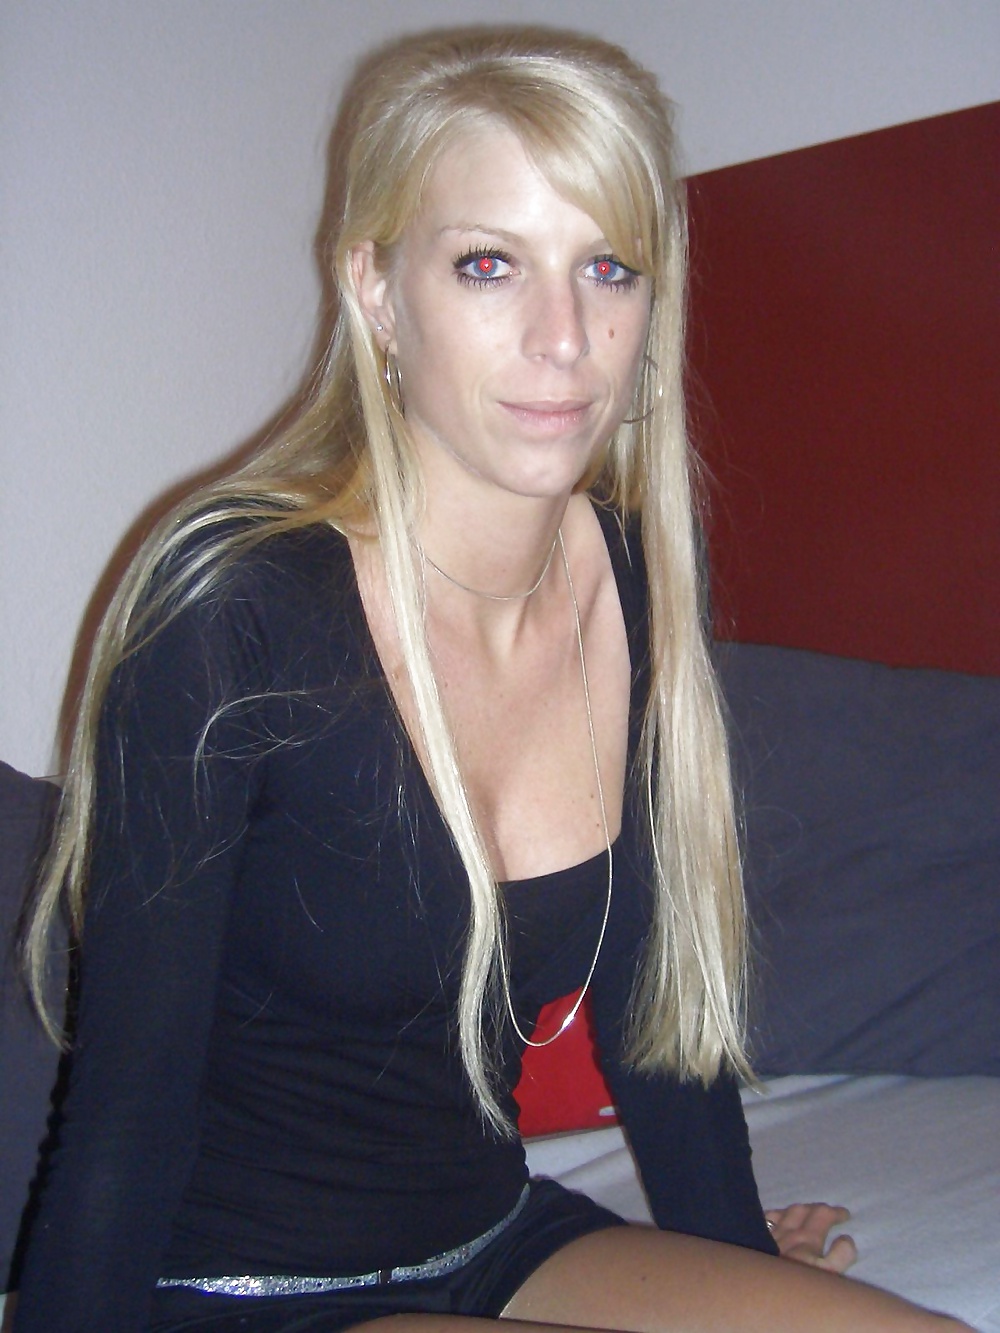 Cute Blonde Teen Exposed & More #26329944